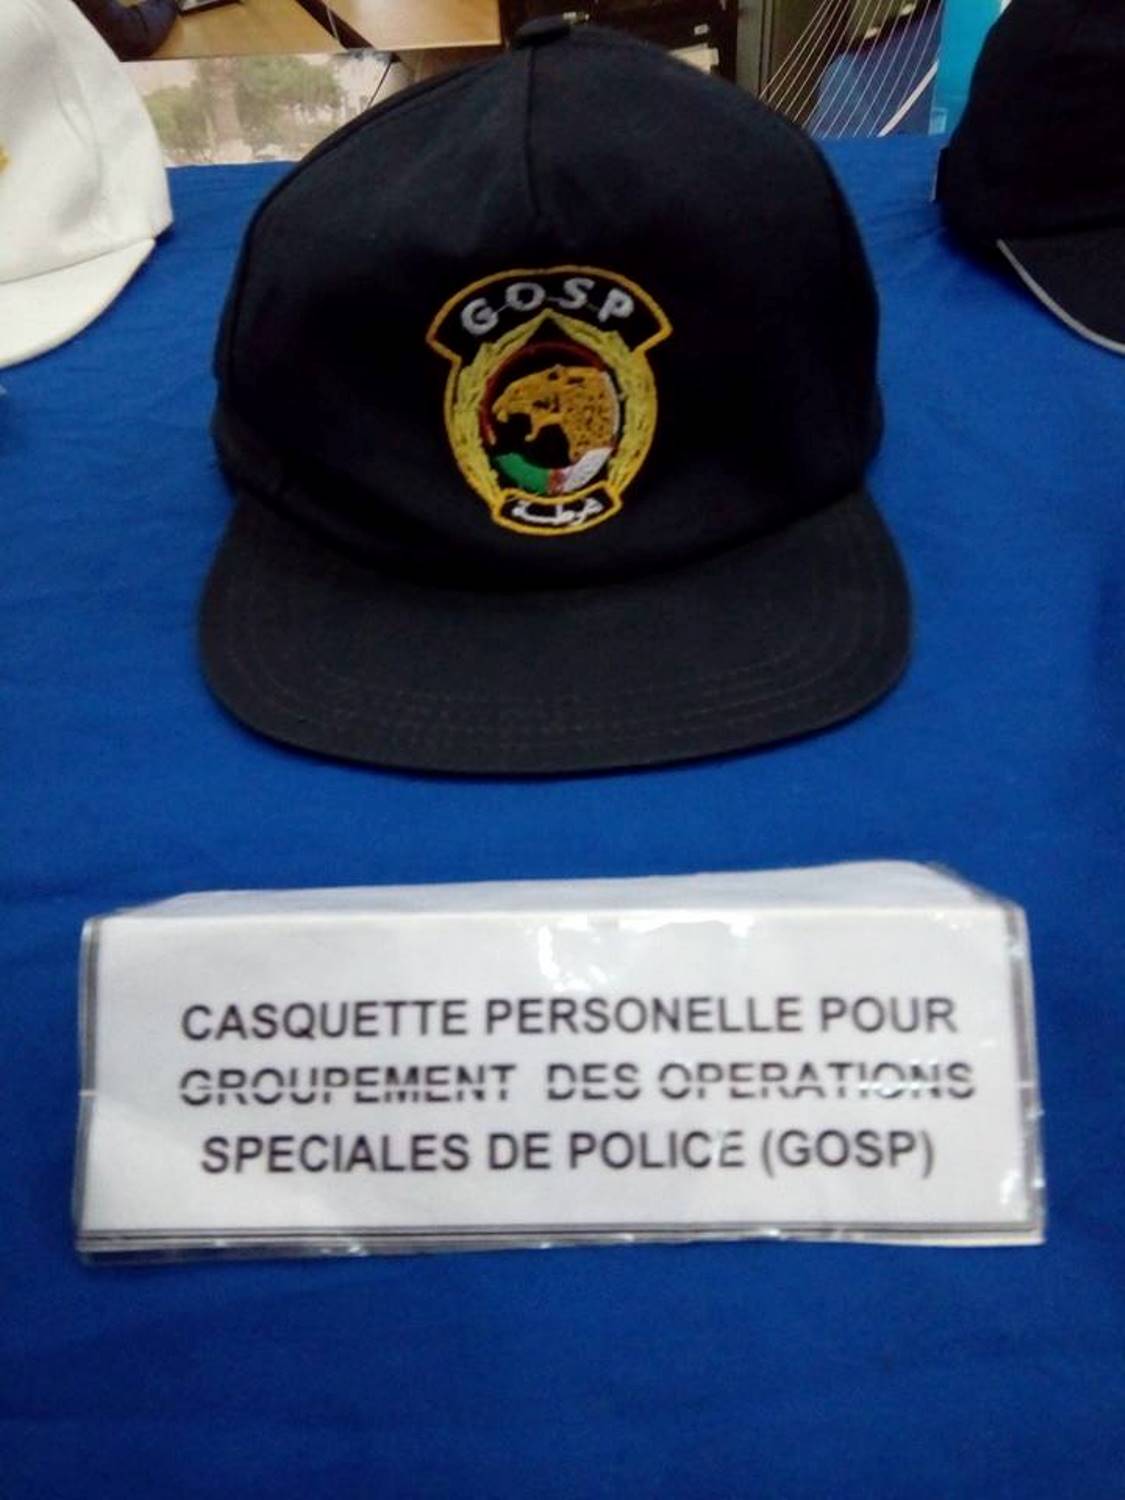 جمهرة العمليات الخاصة الشرطة الجزائرية  [ G.O.S.P ]   - صفحة 3 31069520491_713abcbf38_o